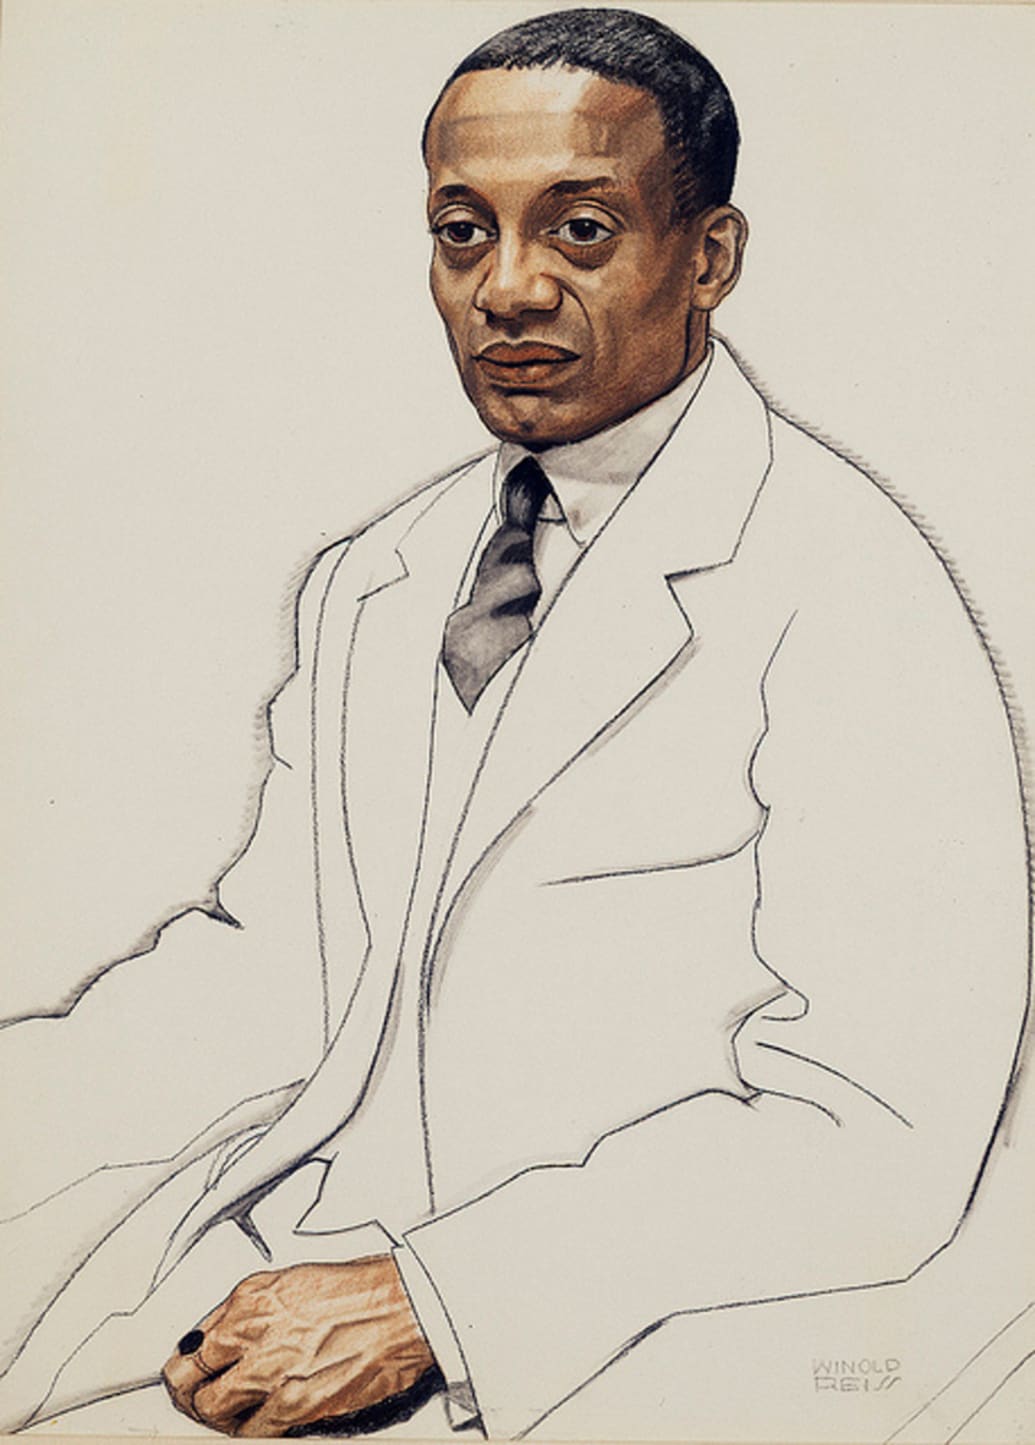 A portrait of Alain Locke by Winold Reiss.